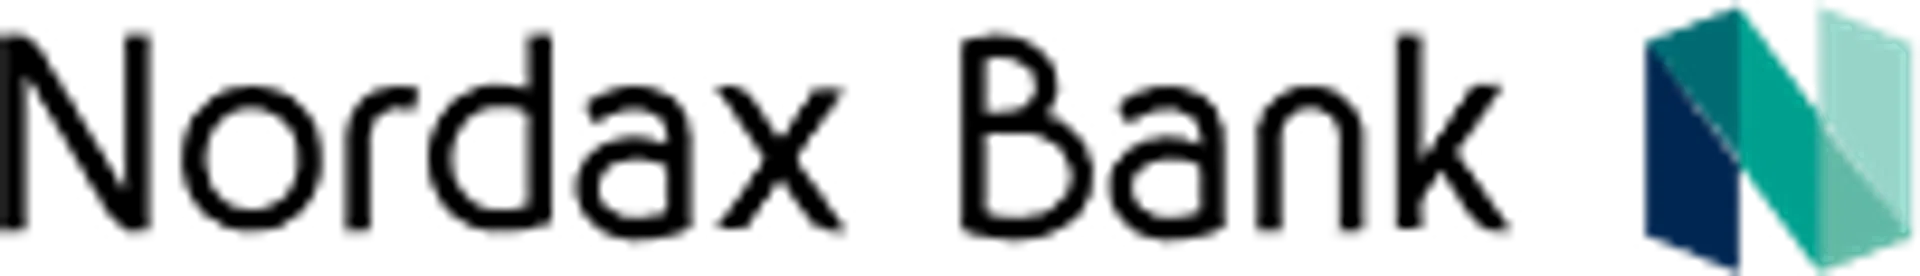 Nordax bank logga i svart färg